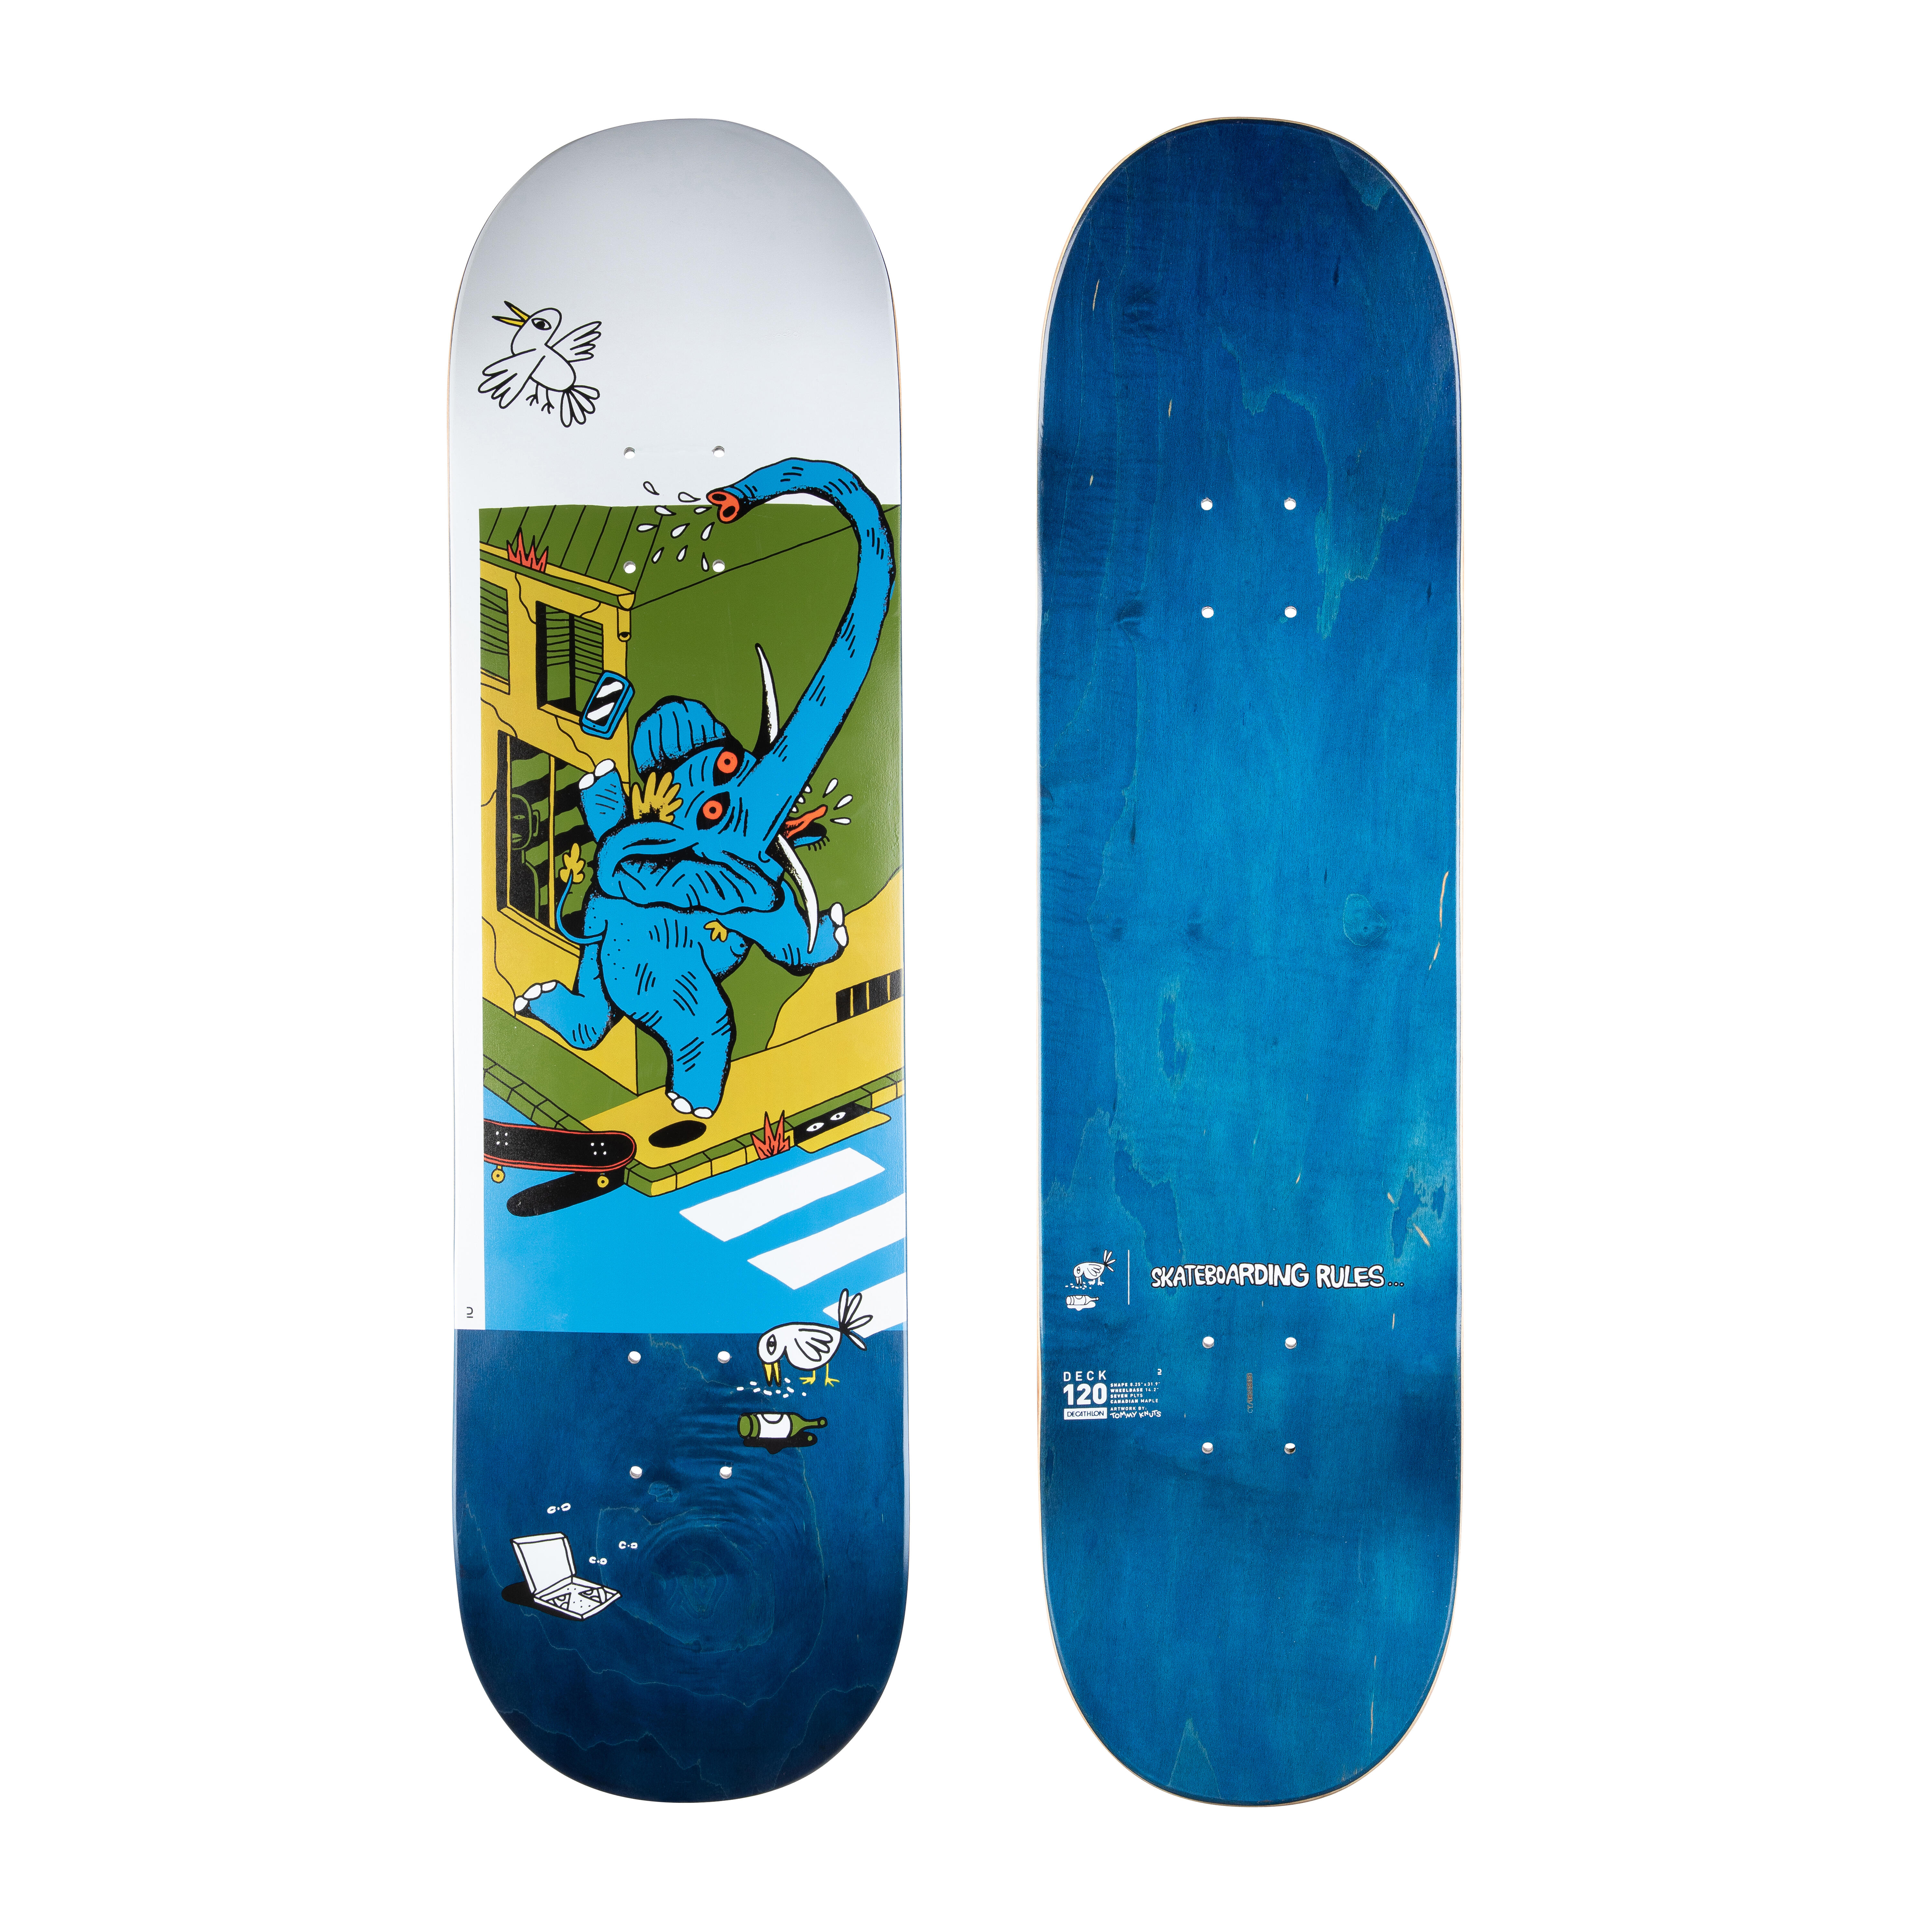 Placă skateboard DK120 KNUTS – SKATEBOARDING RULES 8.25″ La Oferta Online decathlon imagine La Oferta Online